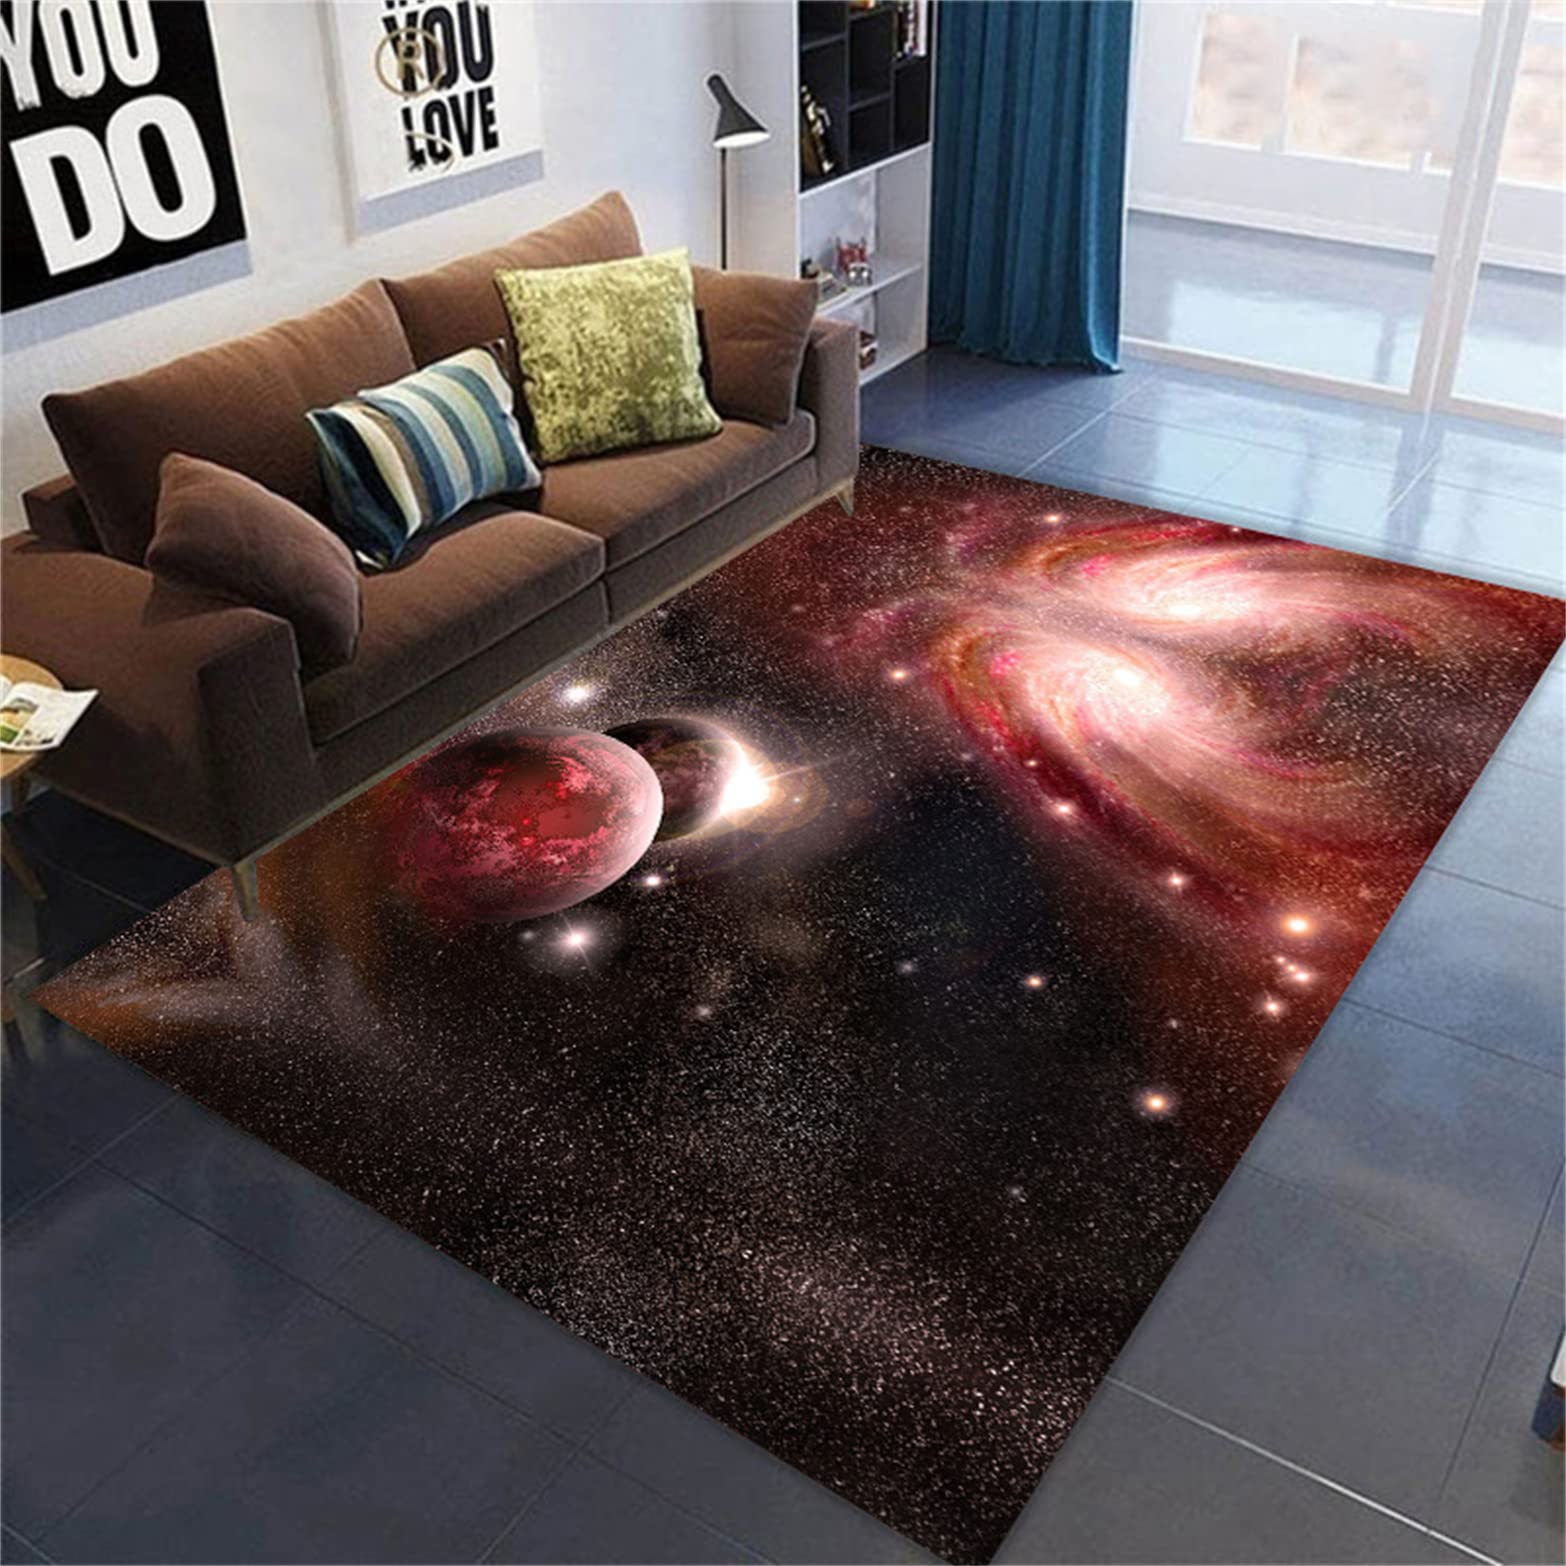 Galaxy Starry Wohnzimmer Teppich Großer Planet Kinderzimmerteppich Earth Star Area Teppich Kinderzimmer Teppich Gaming Zone rutschfeste Bodenmatte Korridor Küche Fußmatte (120 x 180 cm, Farbe 3)